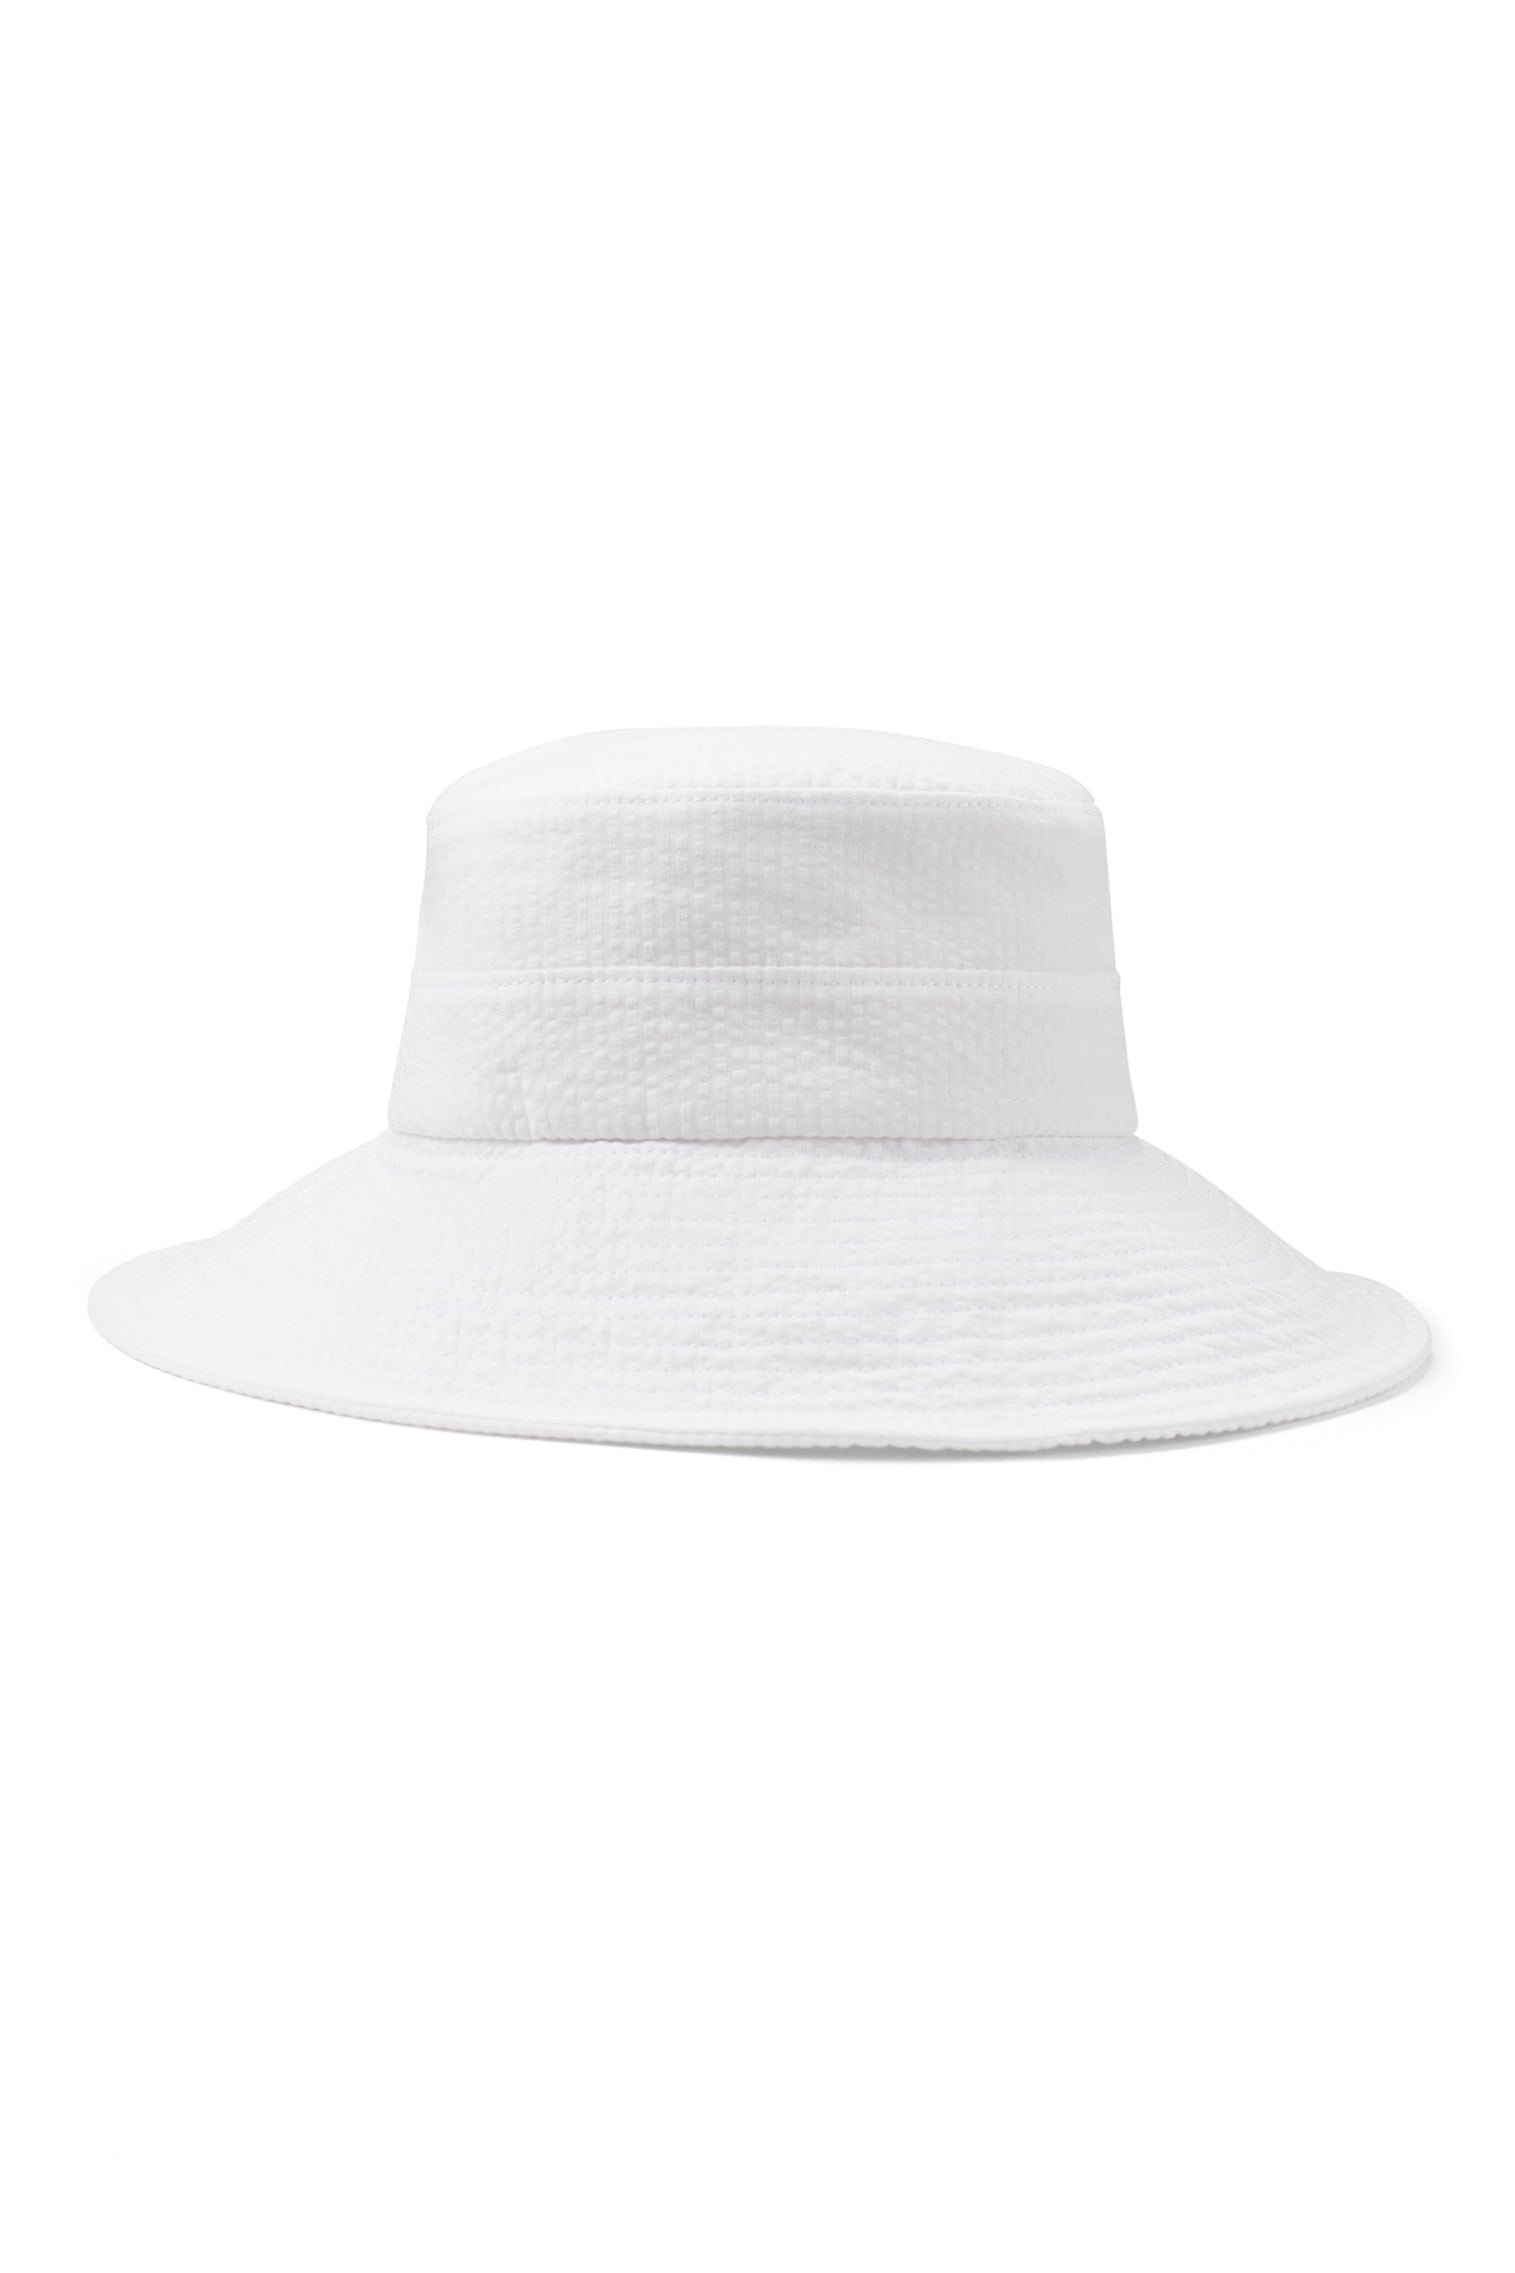 Margot Seersucker Sun Hat - New Season Women's Hats - Lock & Co. Hatters London UK